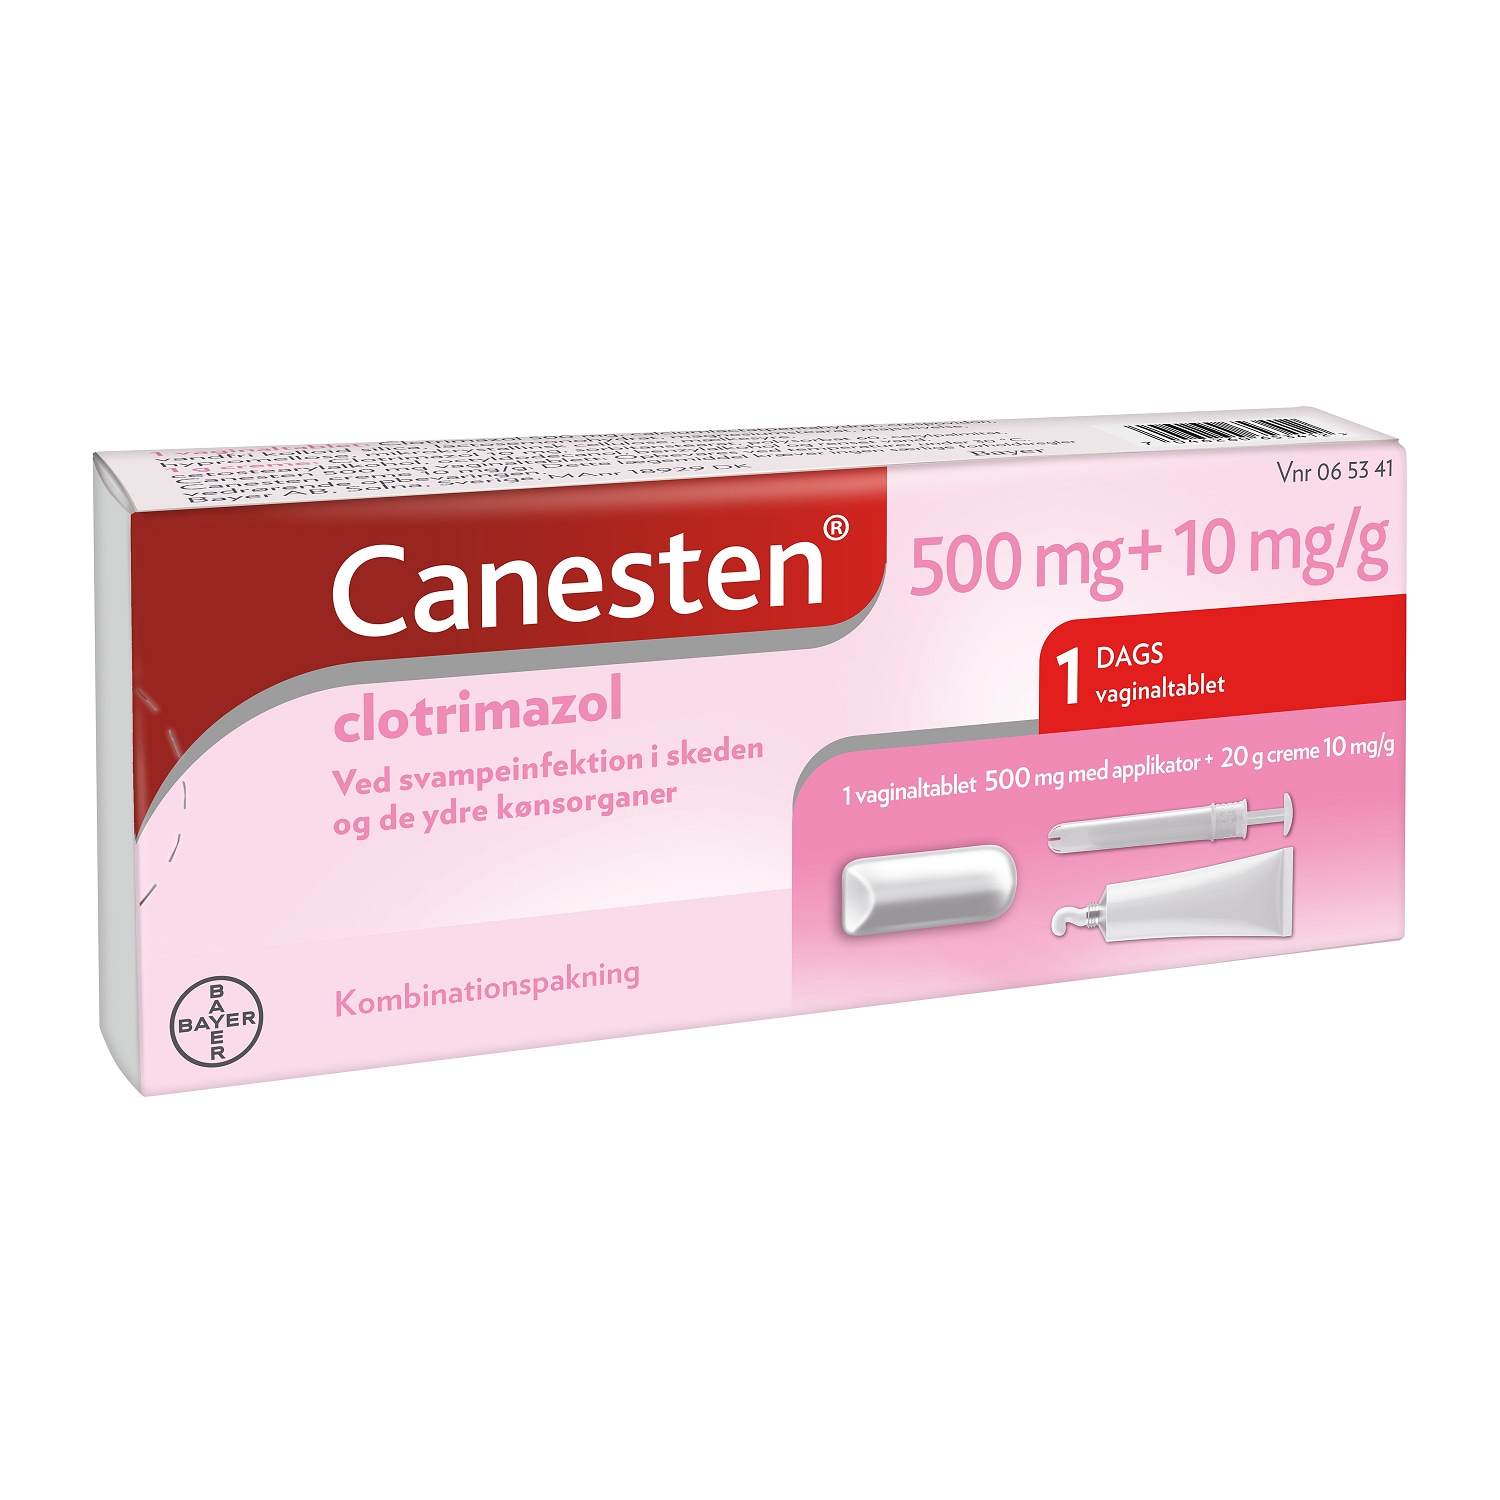 Canesten® kombinationspakning vaginaltablet og creme, 500 mg vaginaltablet og applikator,10mg/g creme